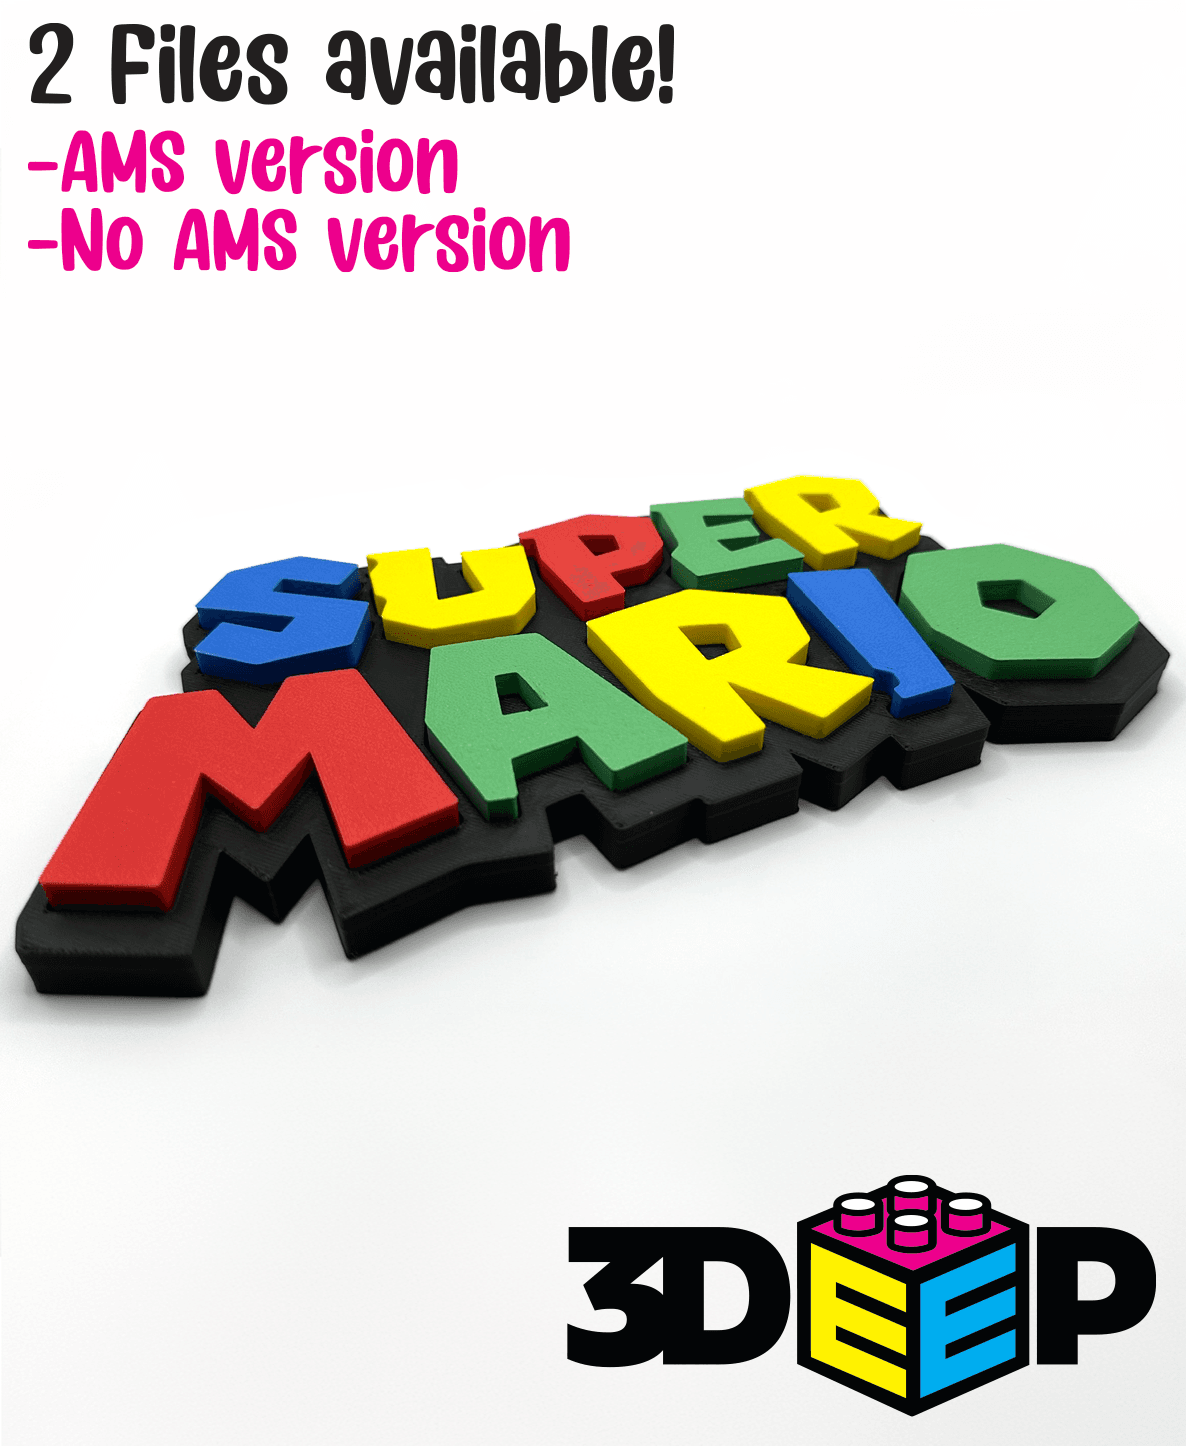 Super Mario Sign 3d model